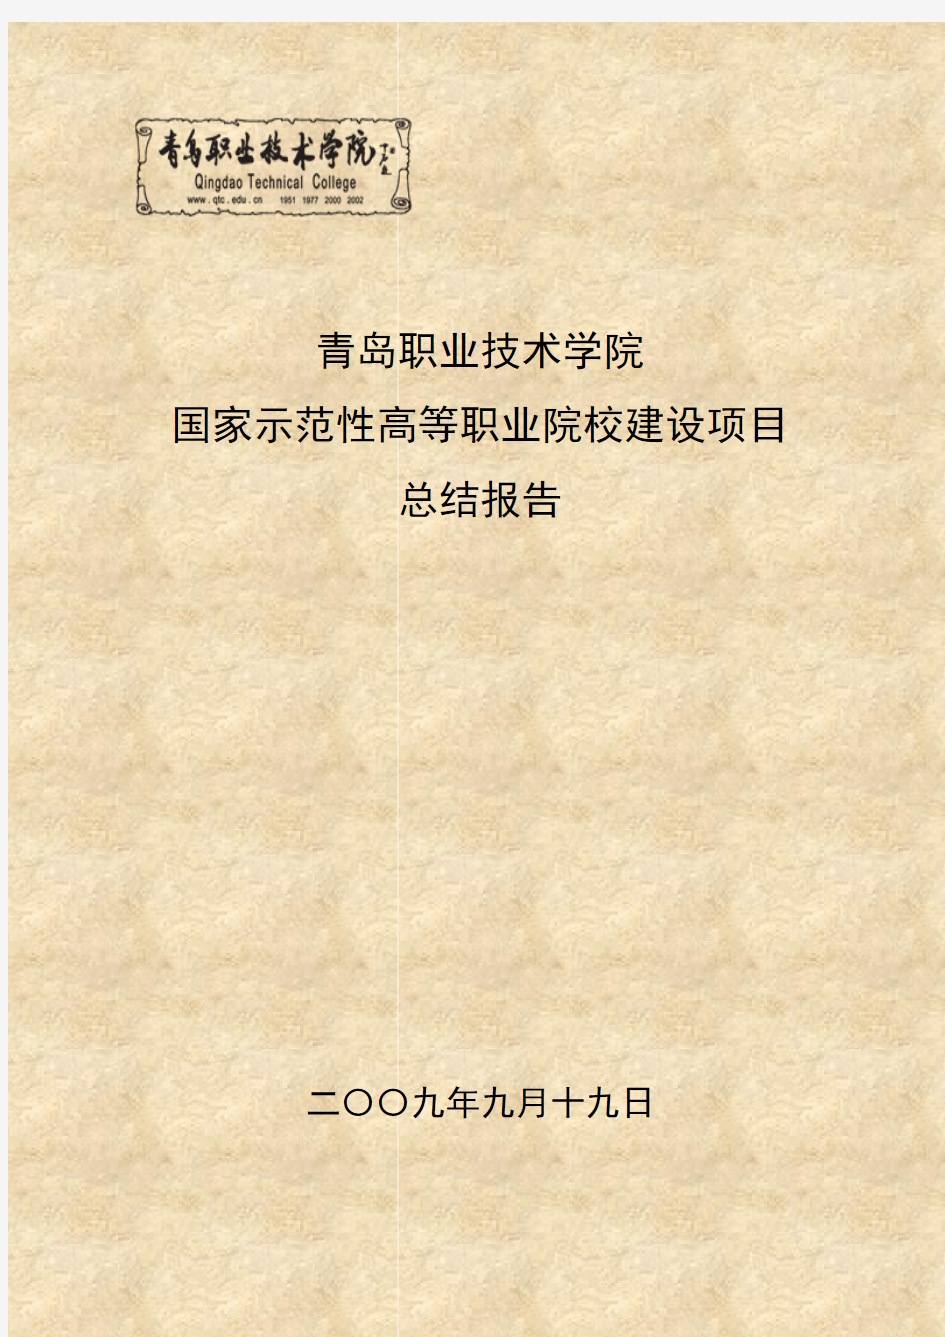 青岛职业技术学院项目总结报告